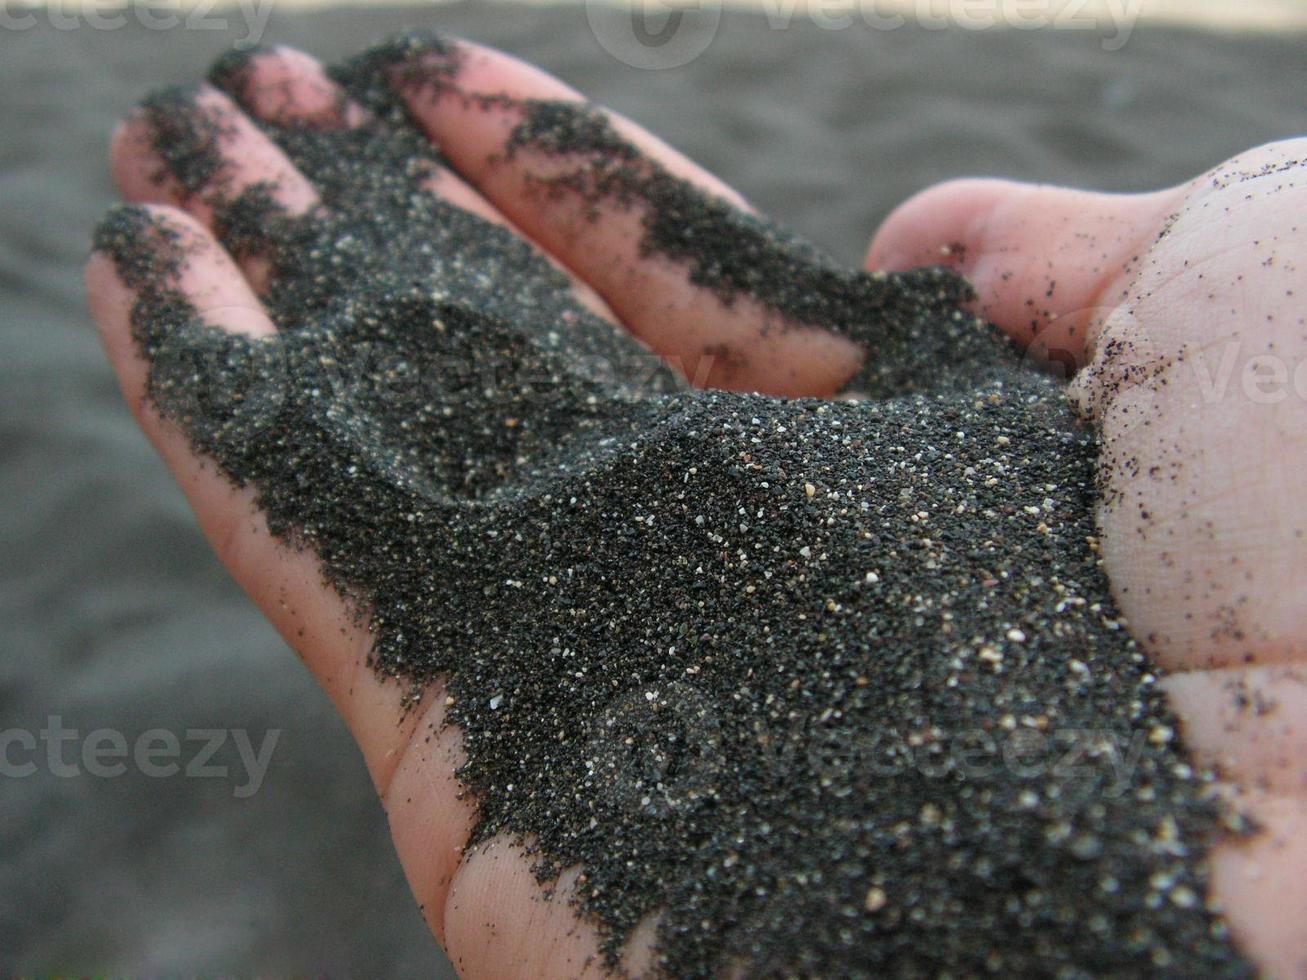 areia preta em uma mão foto